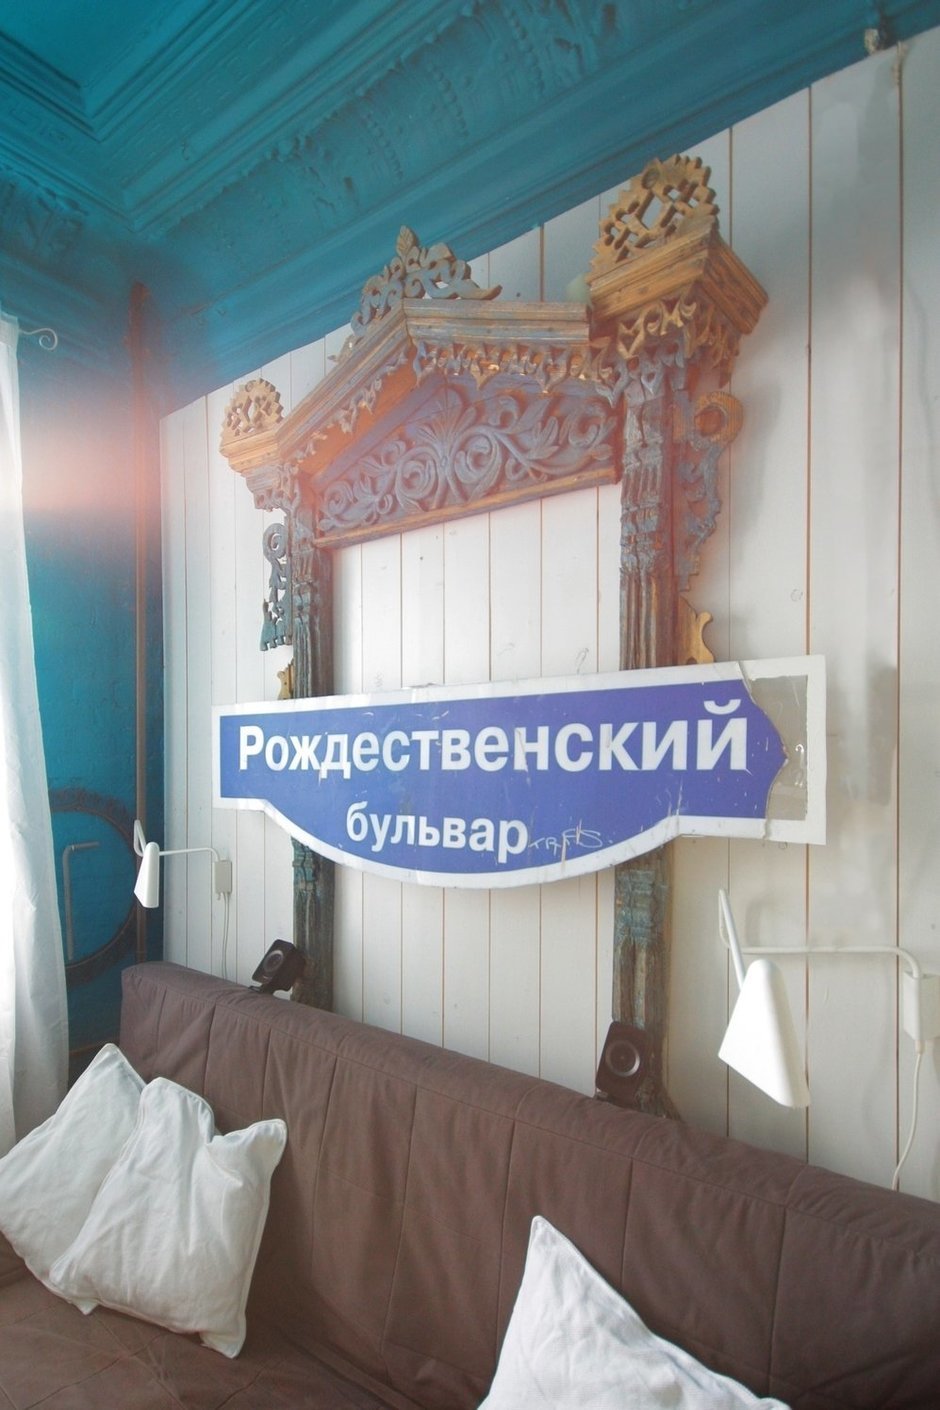 Фотография: в стиле , Малогабаритная квартира, Квартира, Цвет в интерьере, Дома и квартиры, Белый, Бирюзовый – фото на InMyRoom.ru